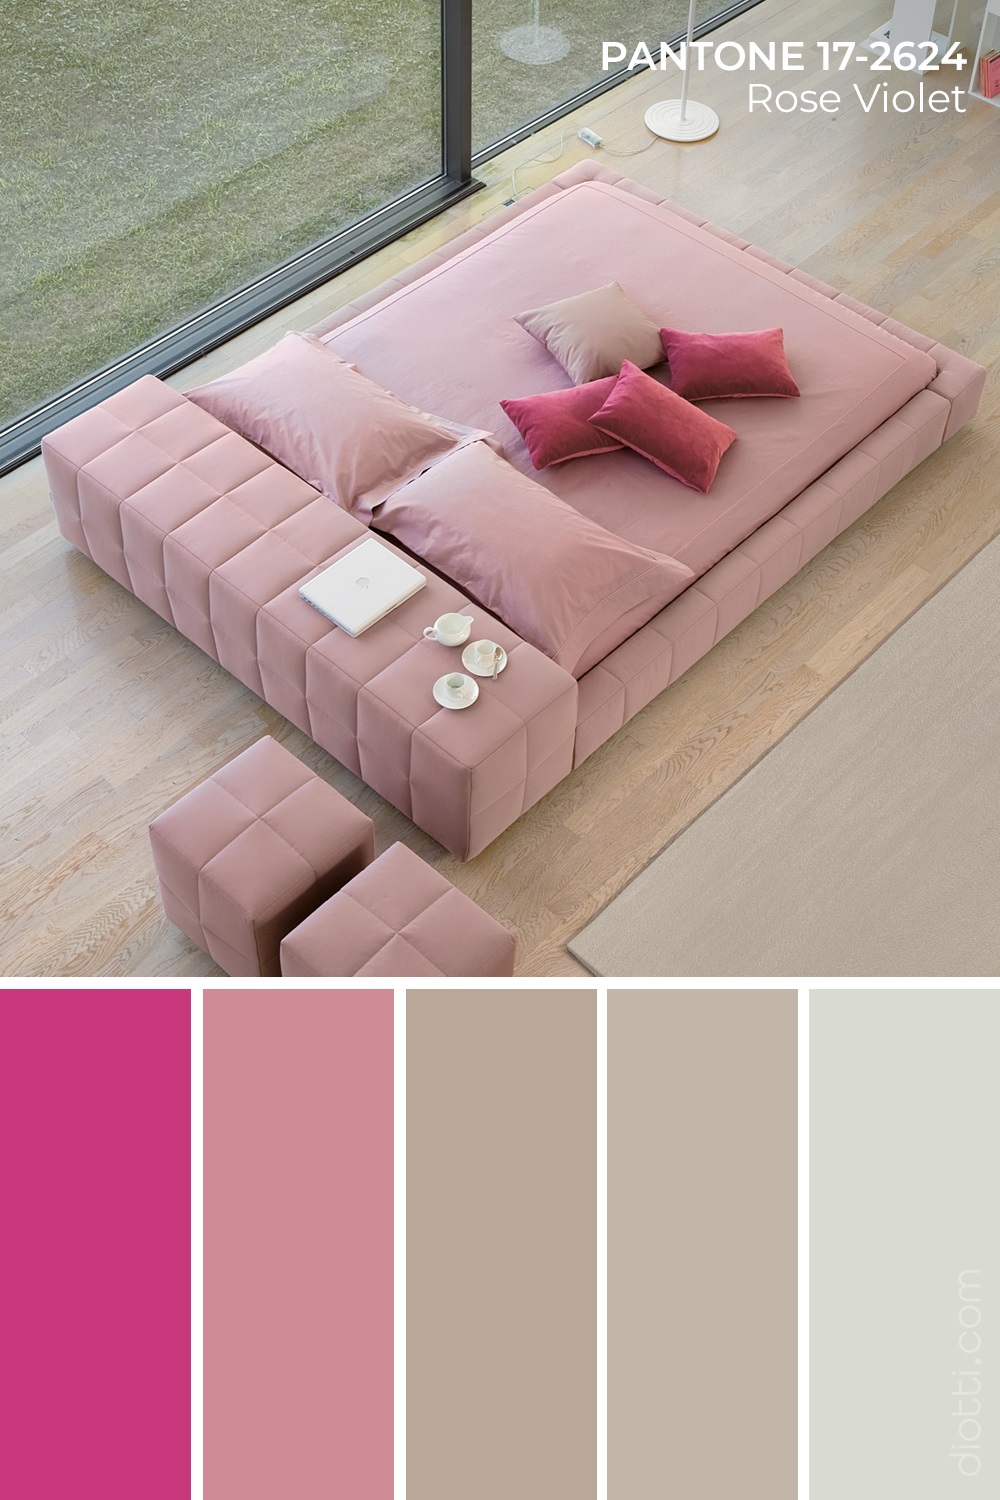 Palette colori fucsia, rosa e tortora per una camera da letto originale e super moderna.